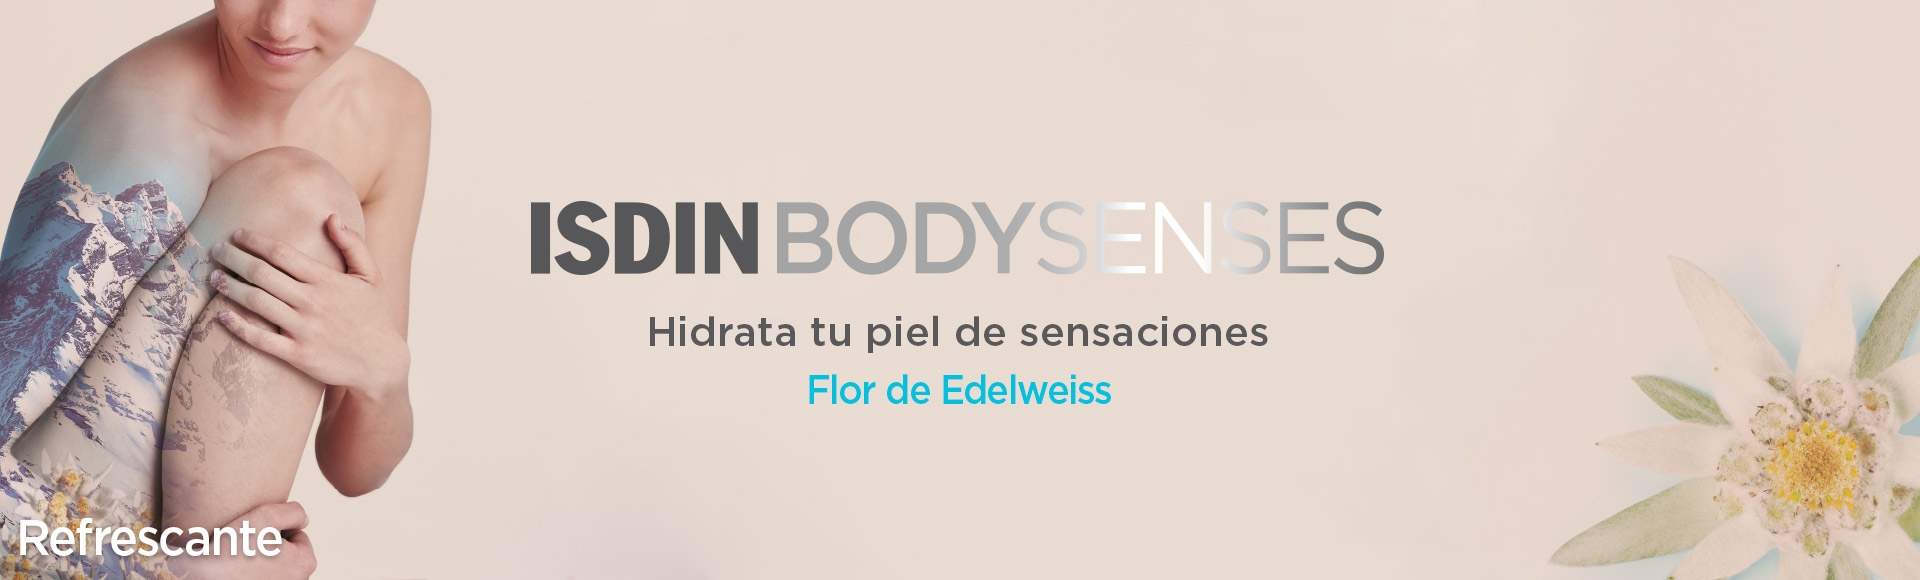 Isdin BodySenses Refrescante Flor de Edelweiss en Farma2go